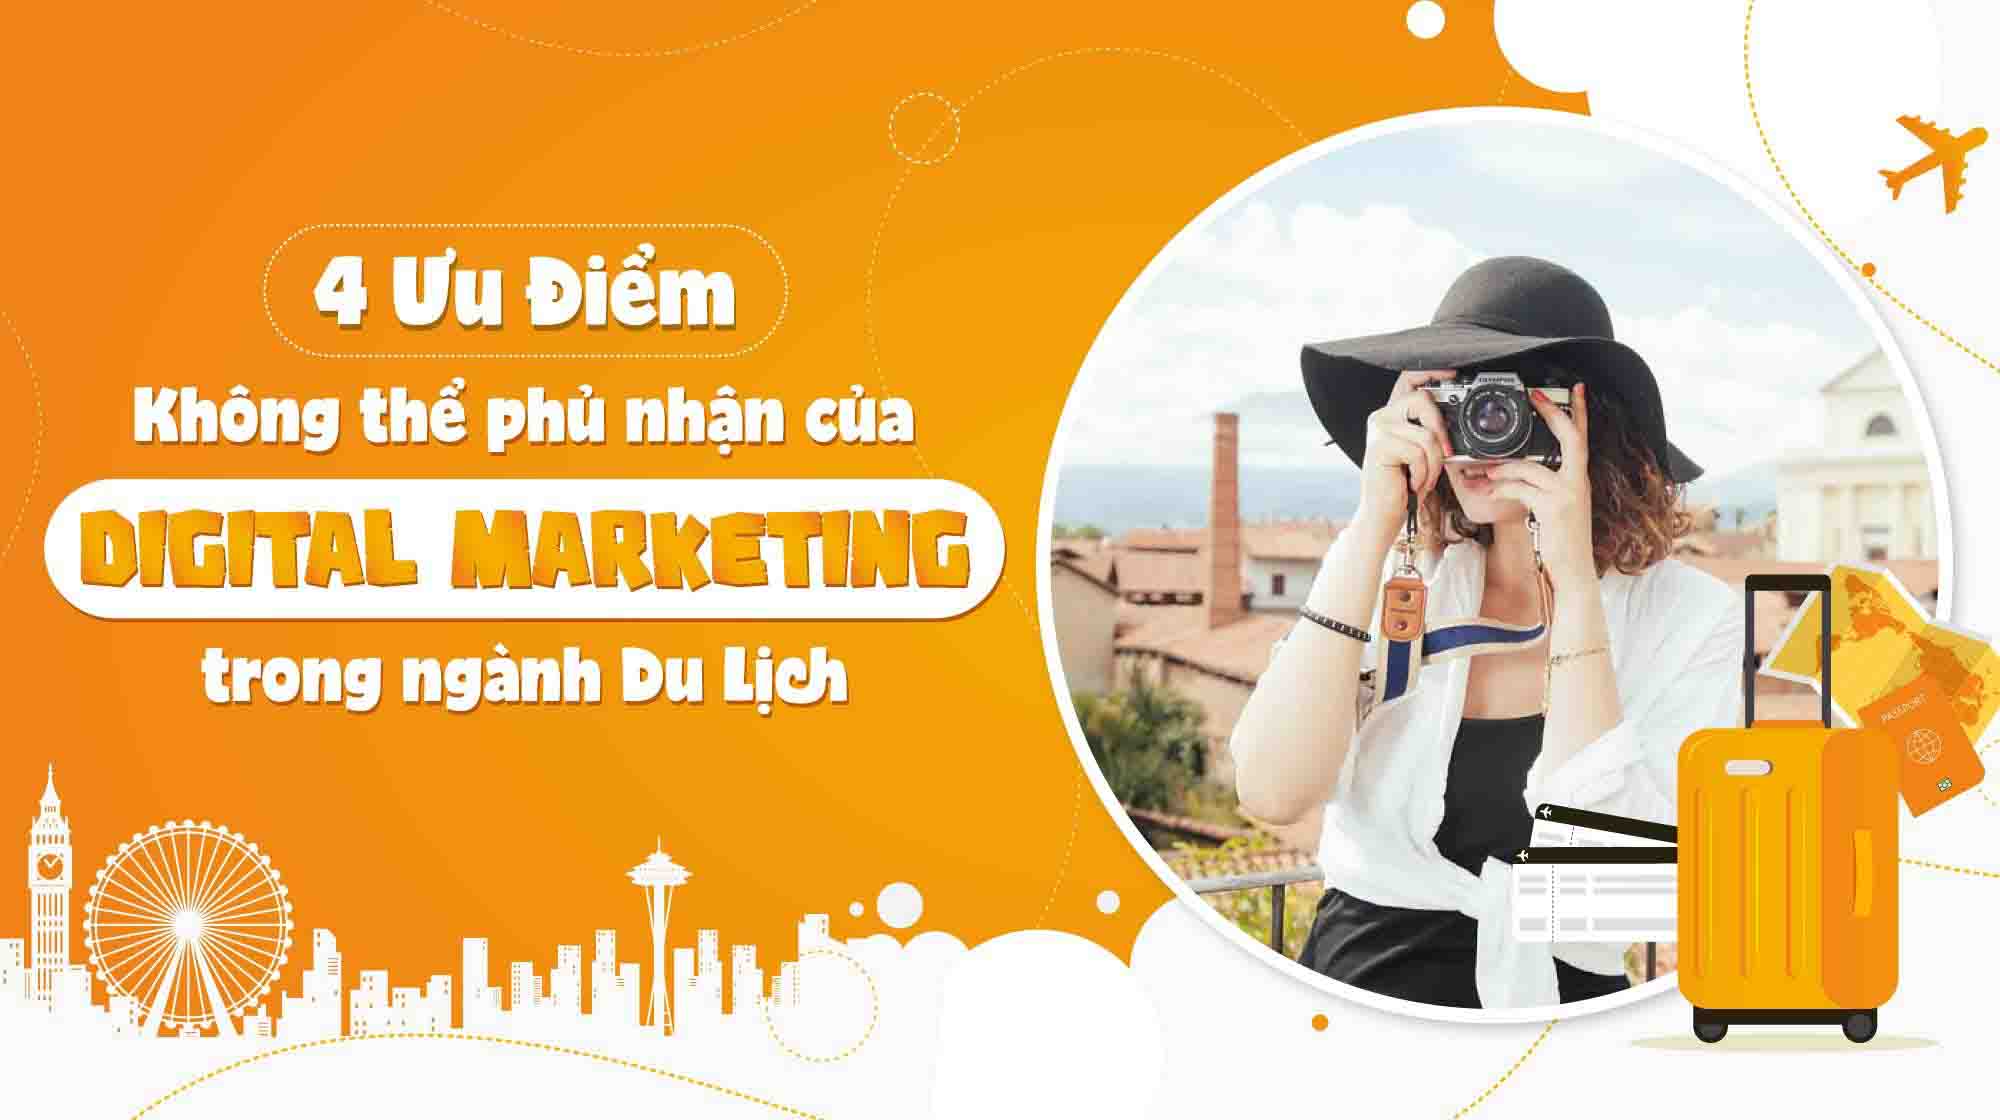 Digital Marketing ngành du lịch